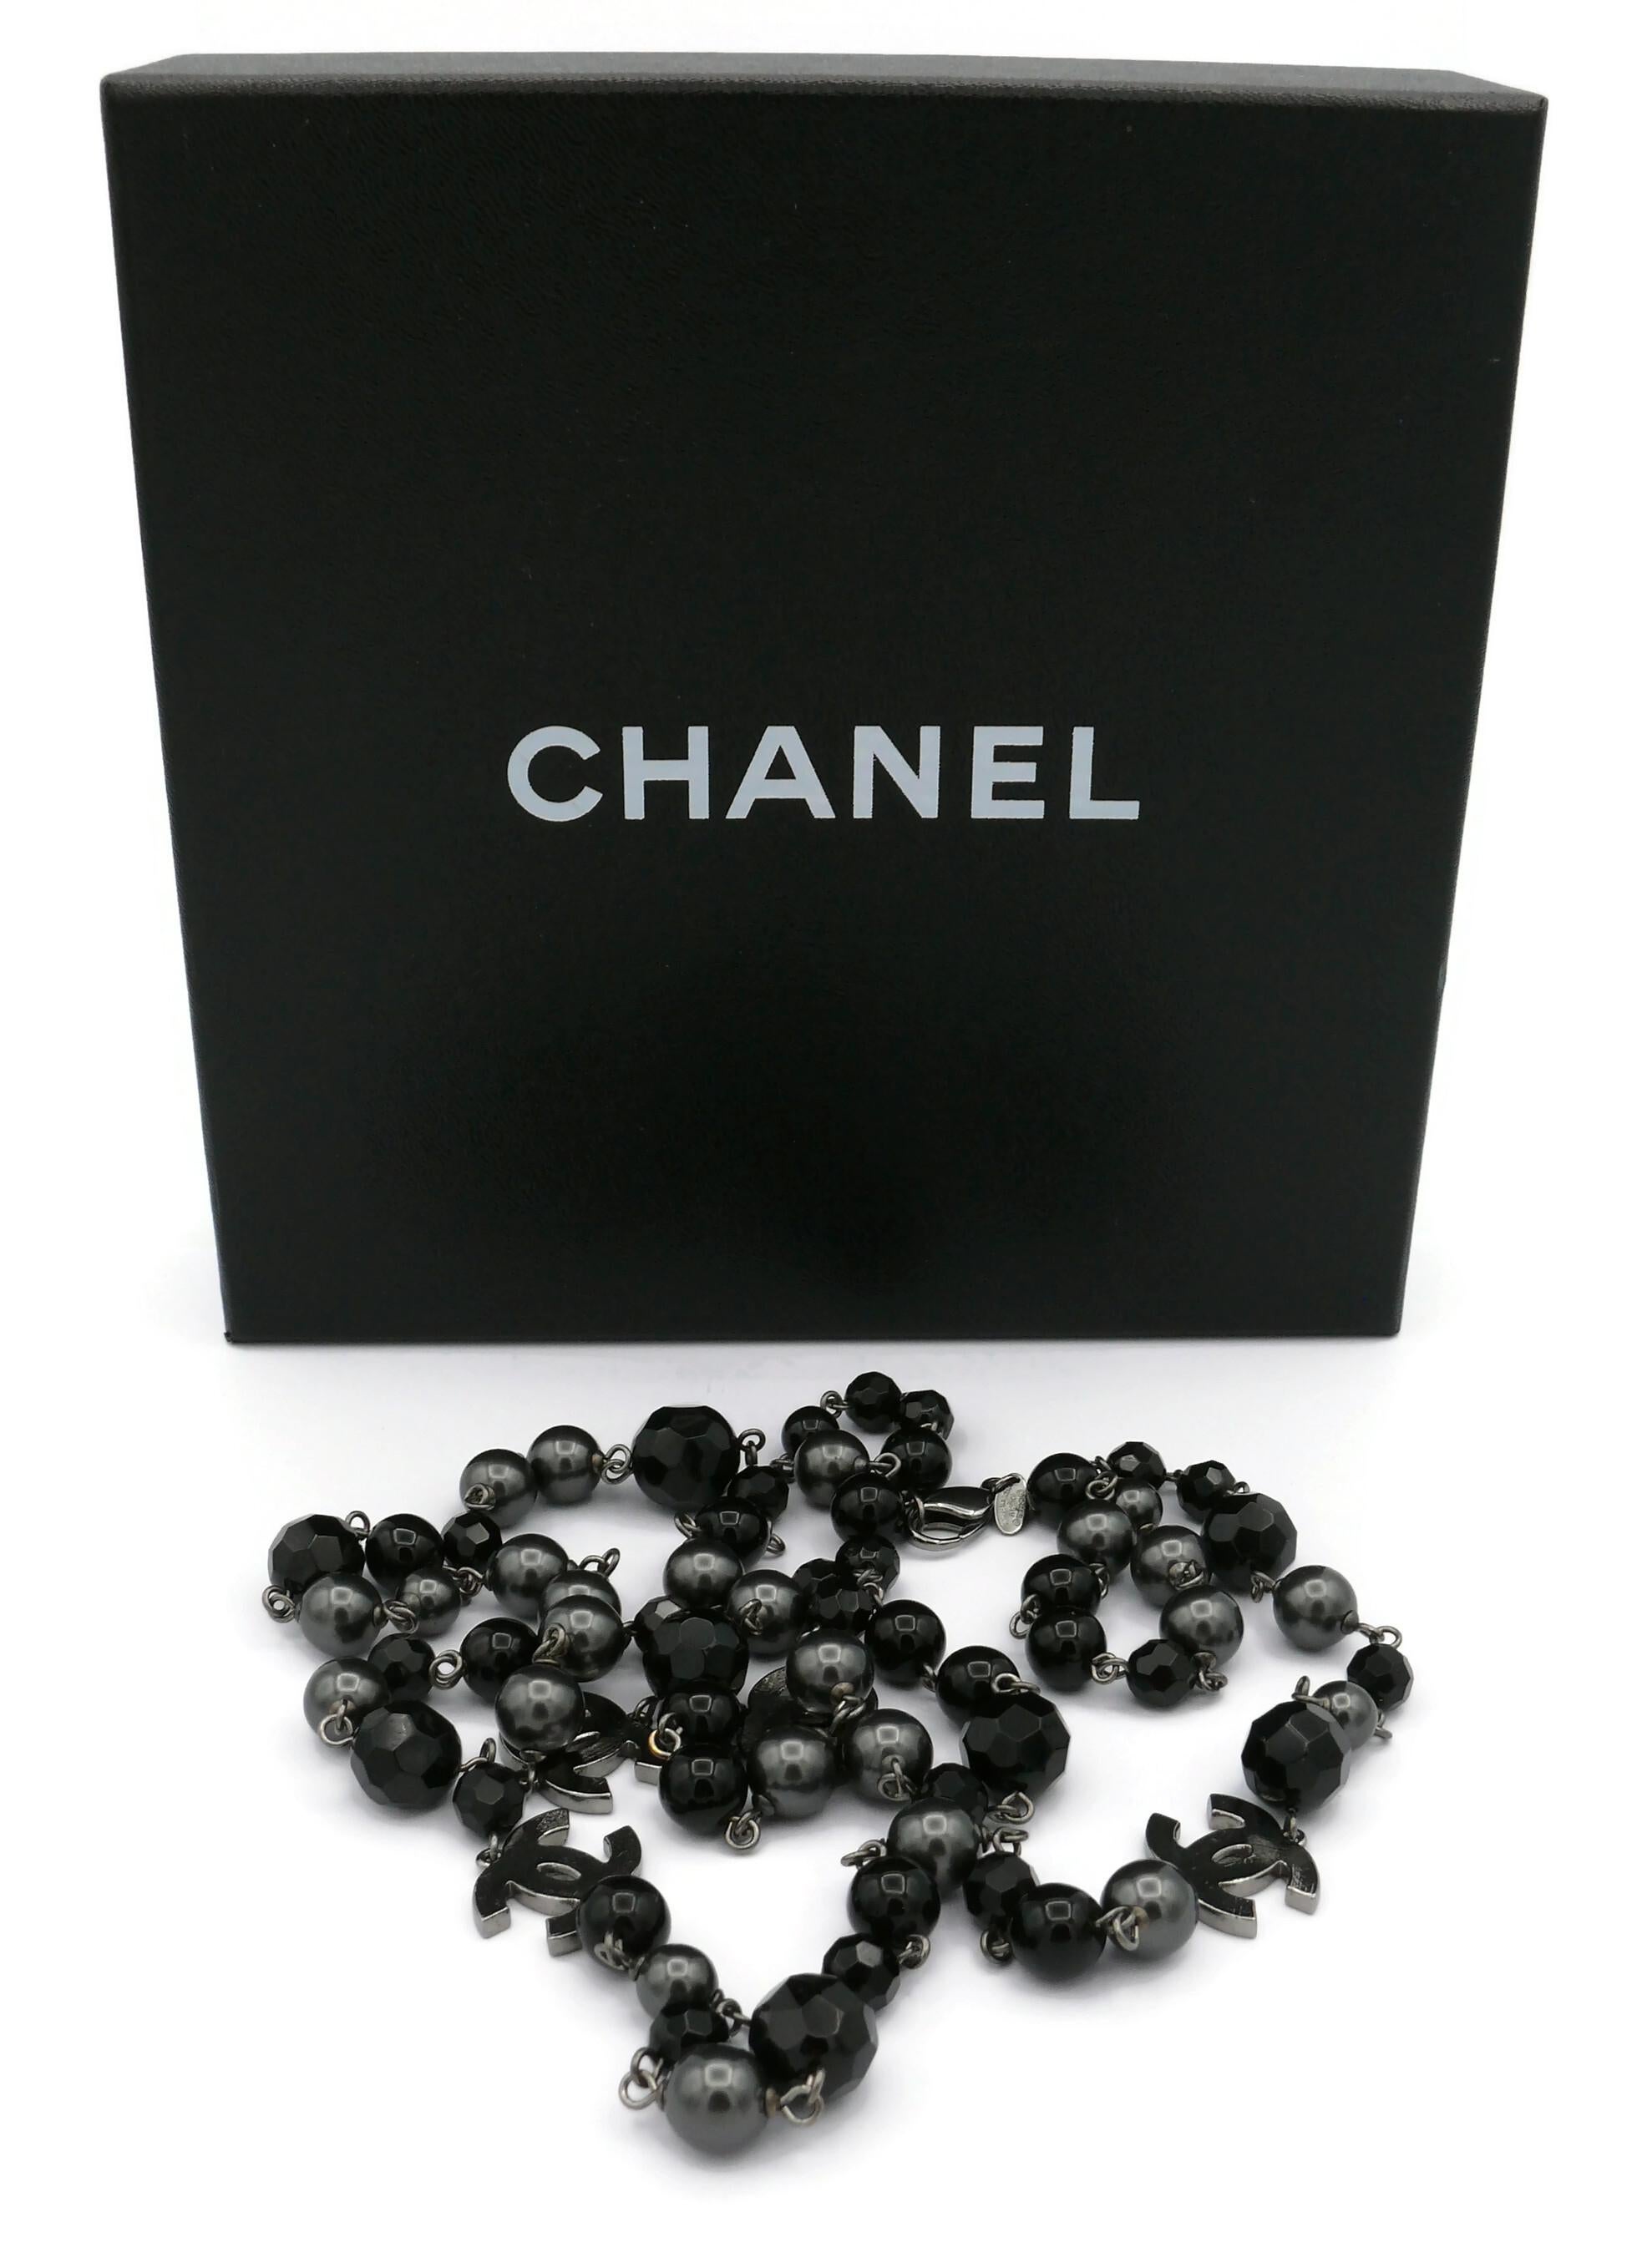 Collier CHANEL by KARL LAGERFELD composé d'un rang de perles noires et de fausses perles grises avec quatre logos CHANEL CC texturés en ton argenté.

Ce collier peut être enroulé deux fois autour du cou.

Fermeture avec un fermoir en forme de